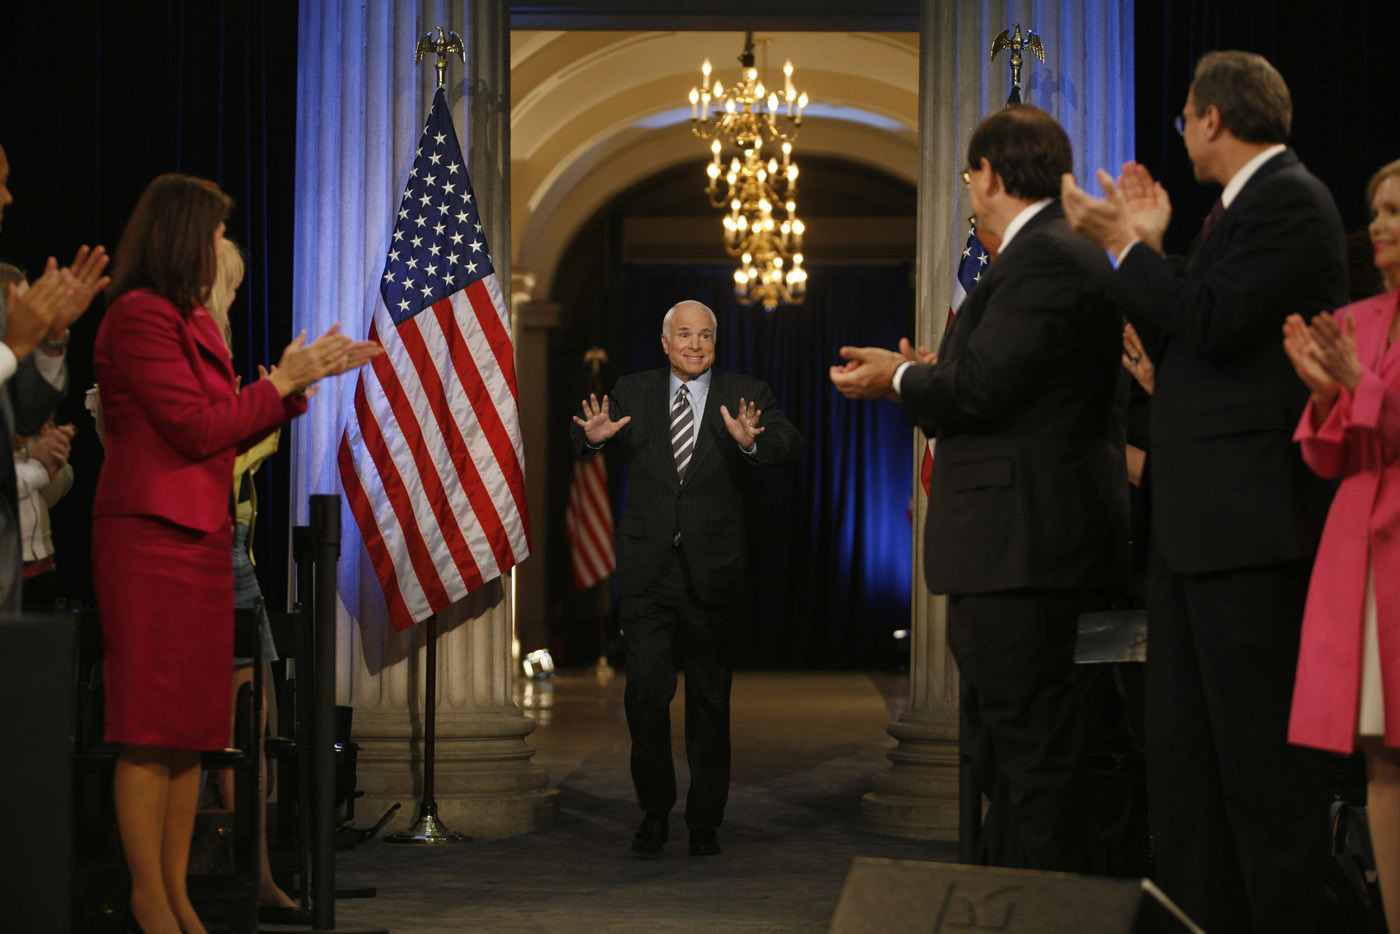 John McCain greets NY voters